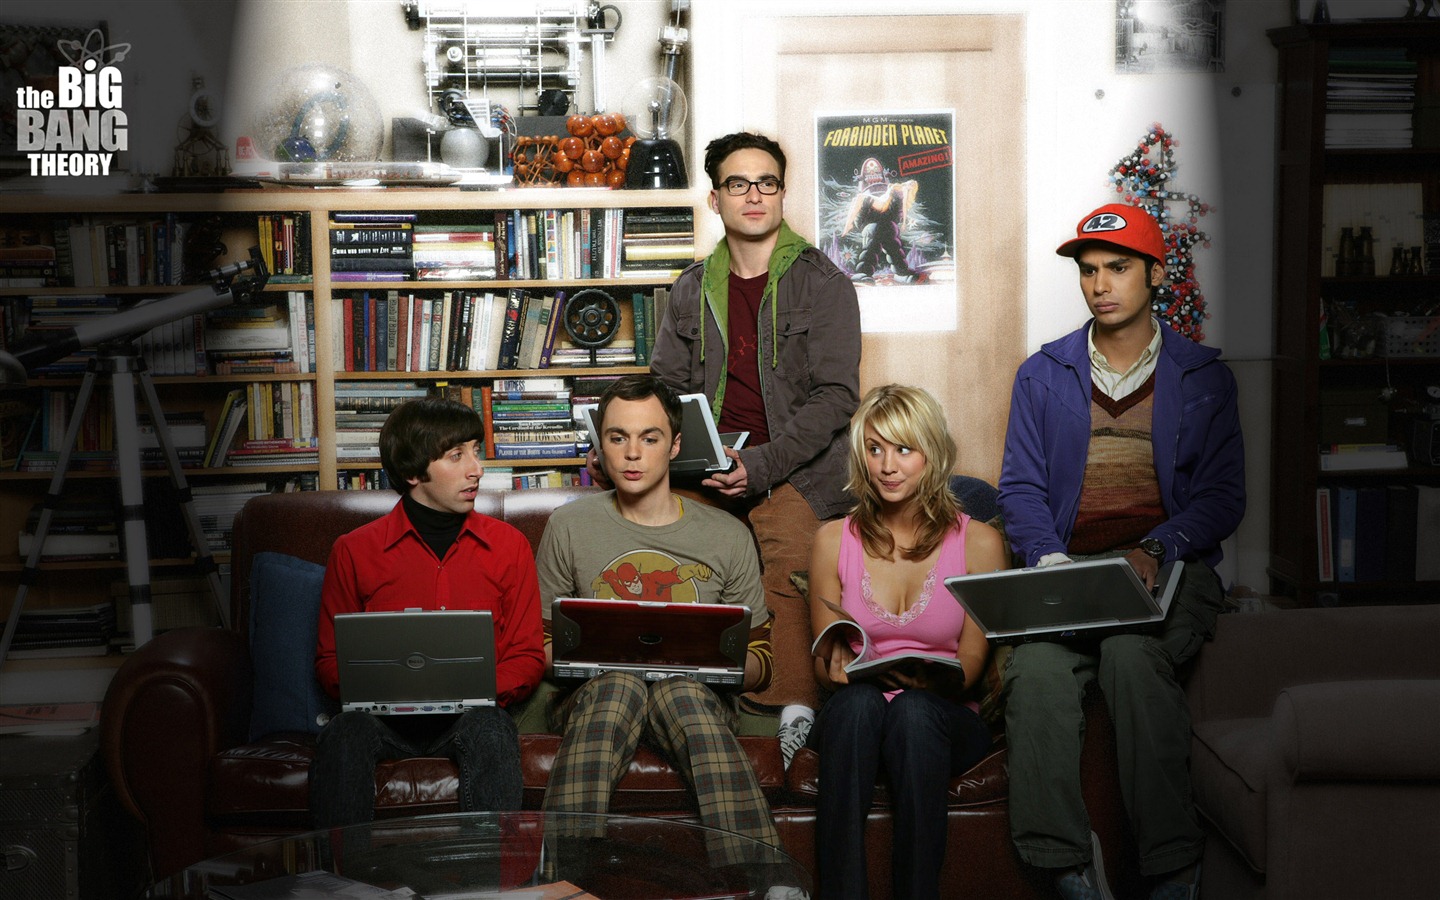 The Big Bang Theory 生活大爆炸 电视剧高清壁纸19 - 1440x900